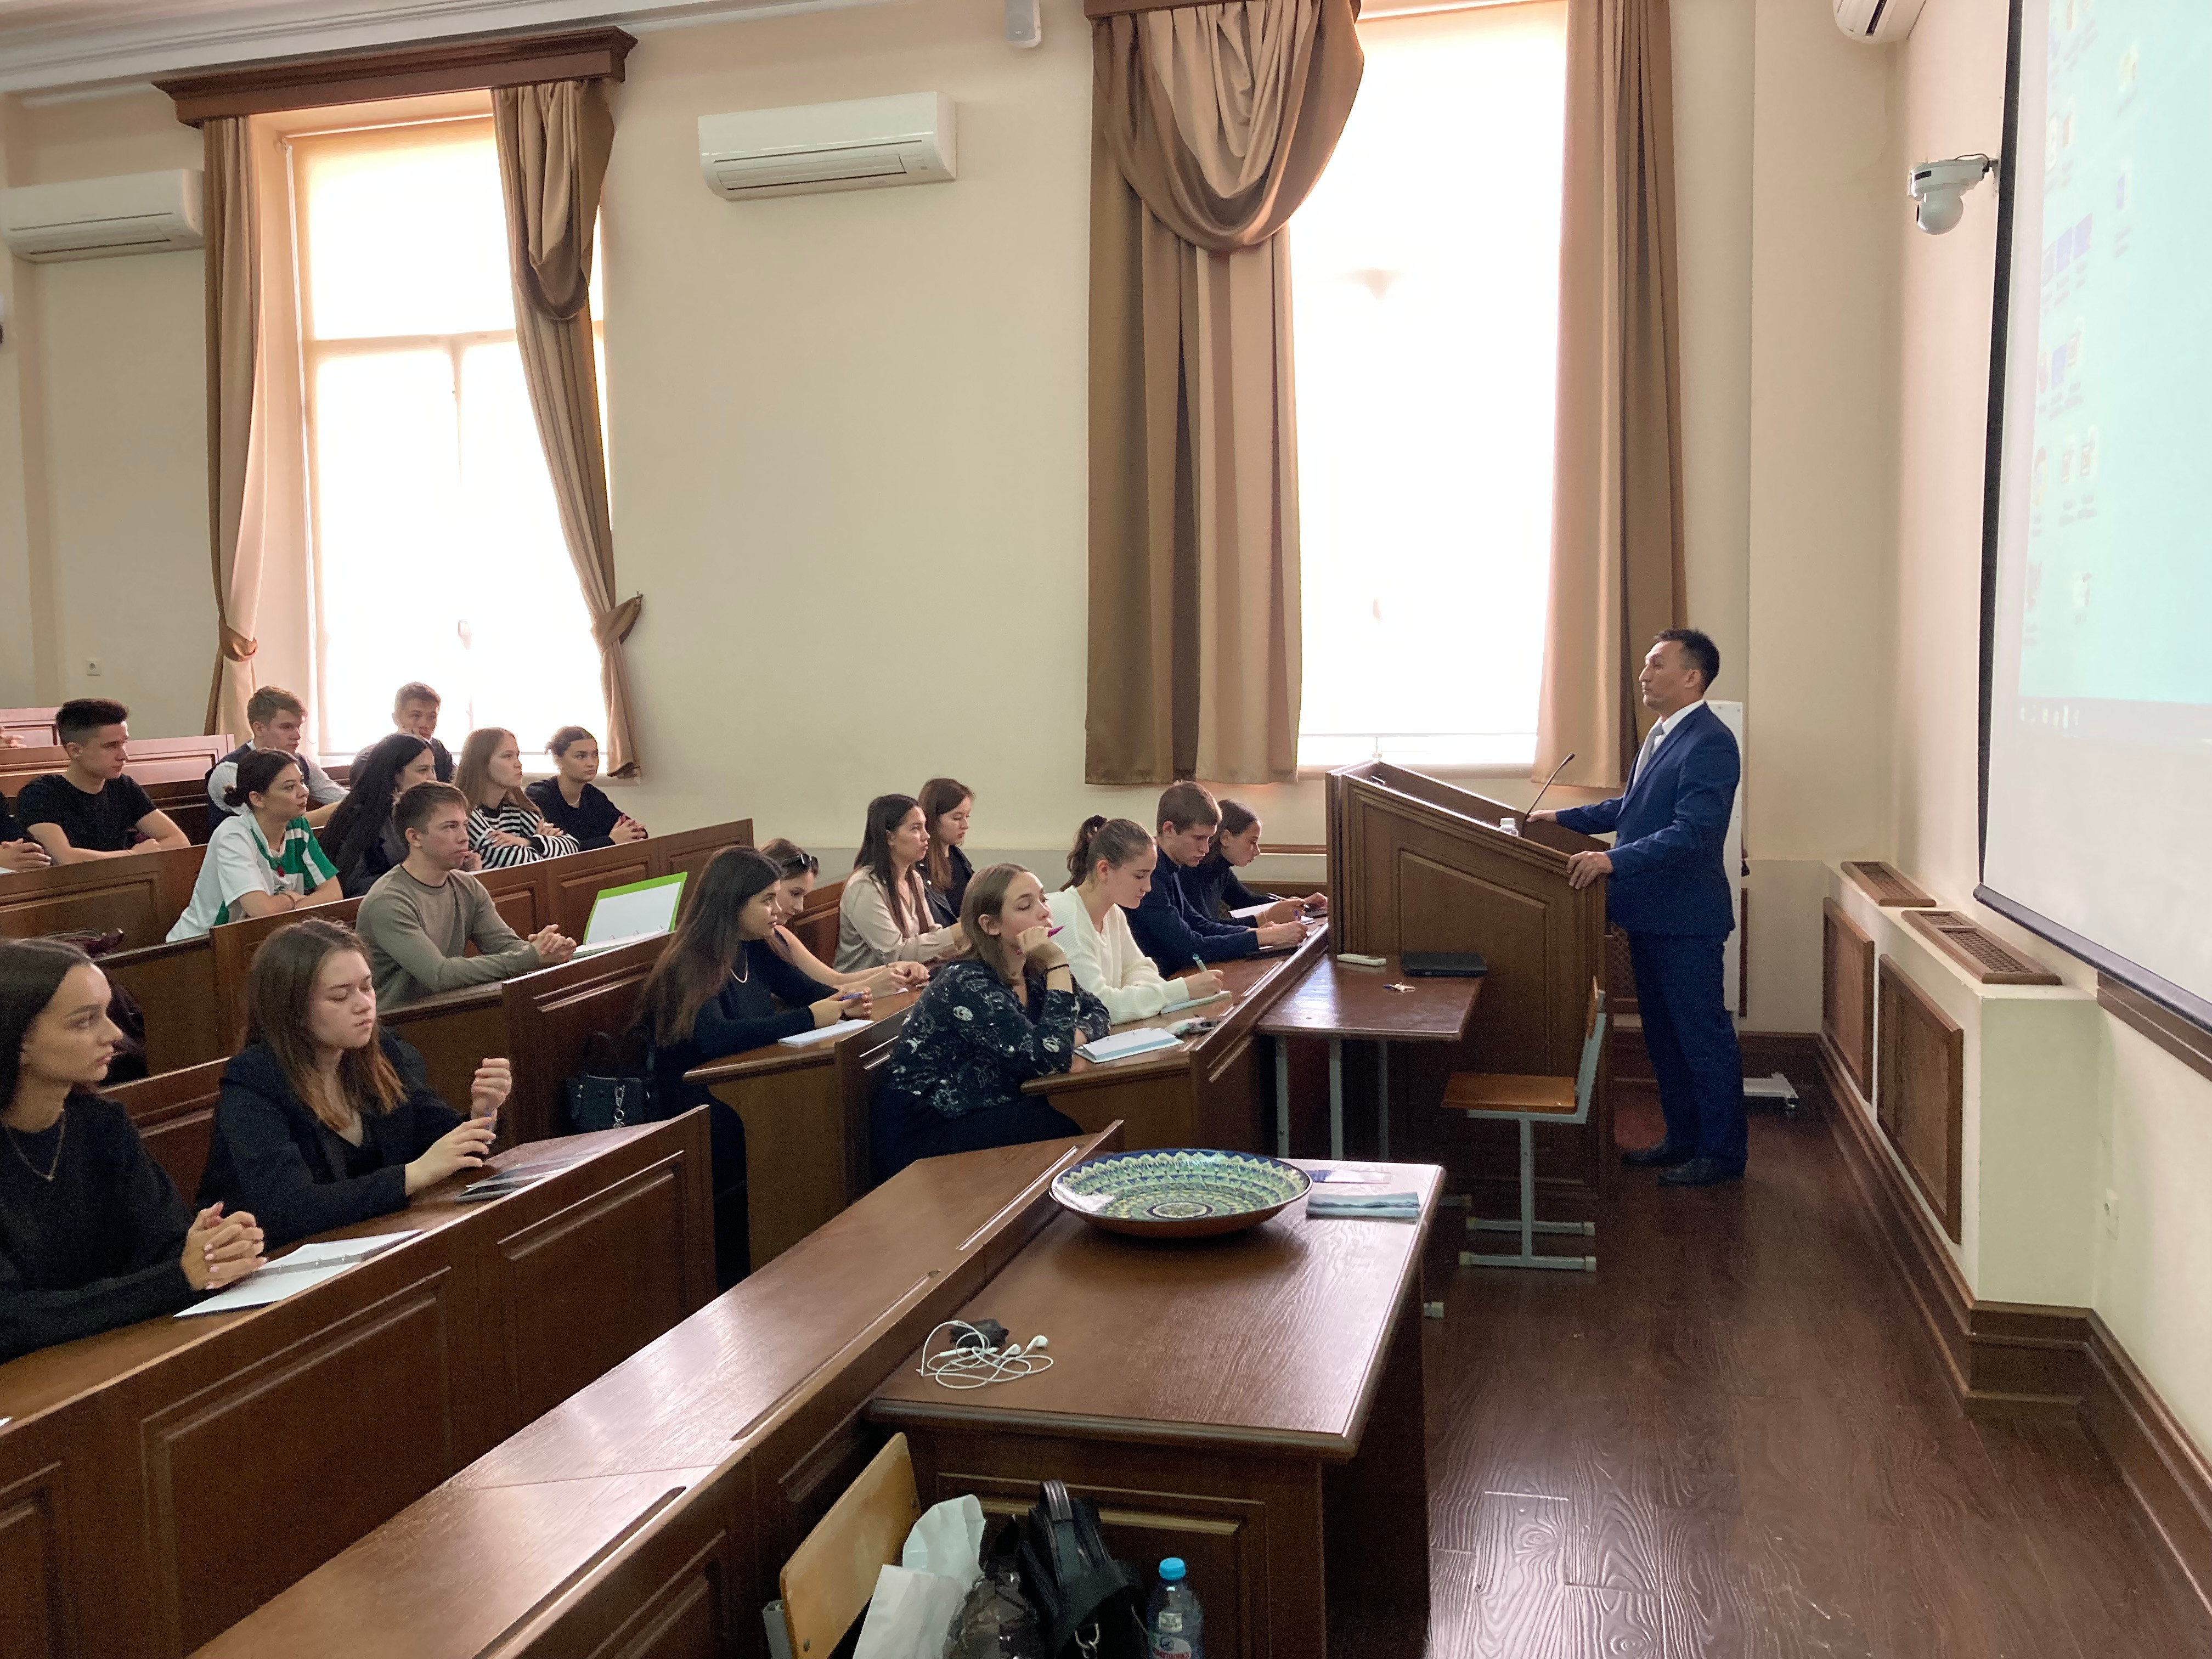 20 сентября на Юридическом факультете проведена бинарная лекция по дисциплине Теория государства и права с участием представителей Ташкентского государственного юридического университета